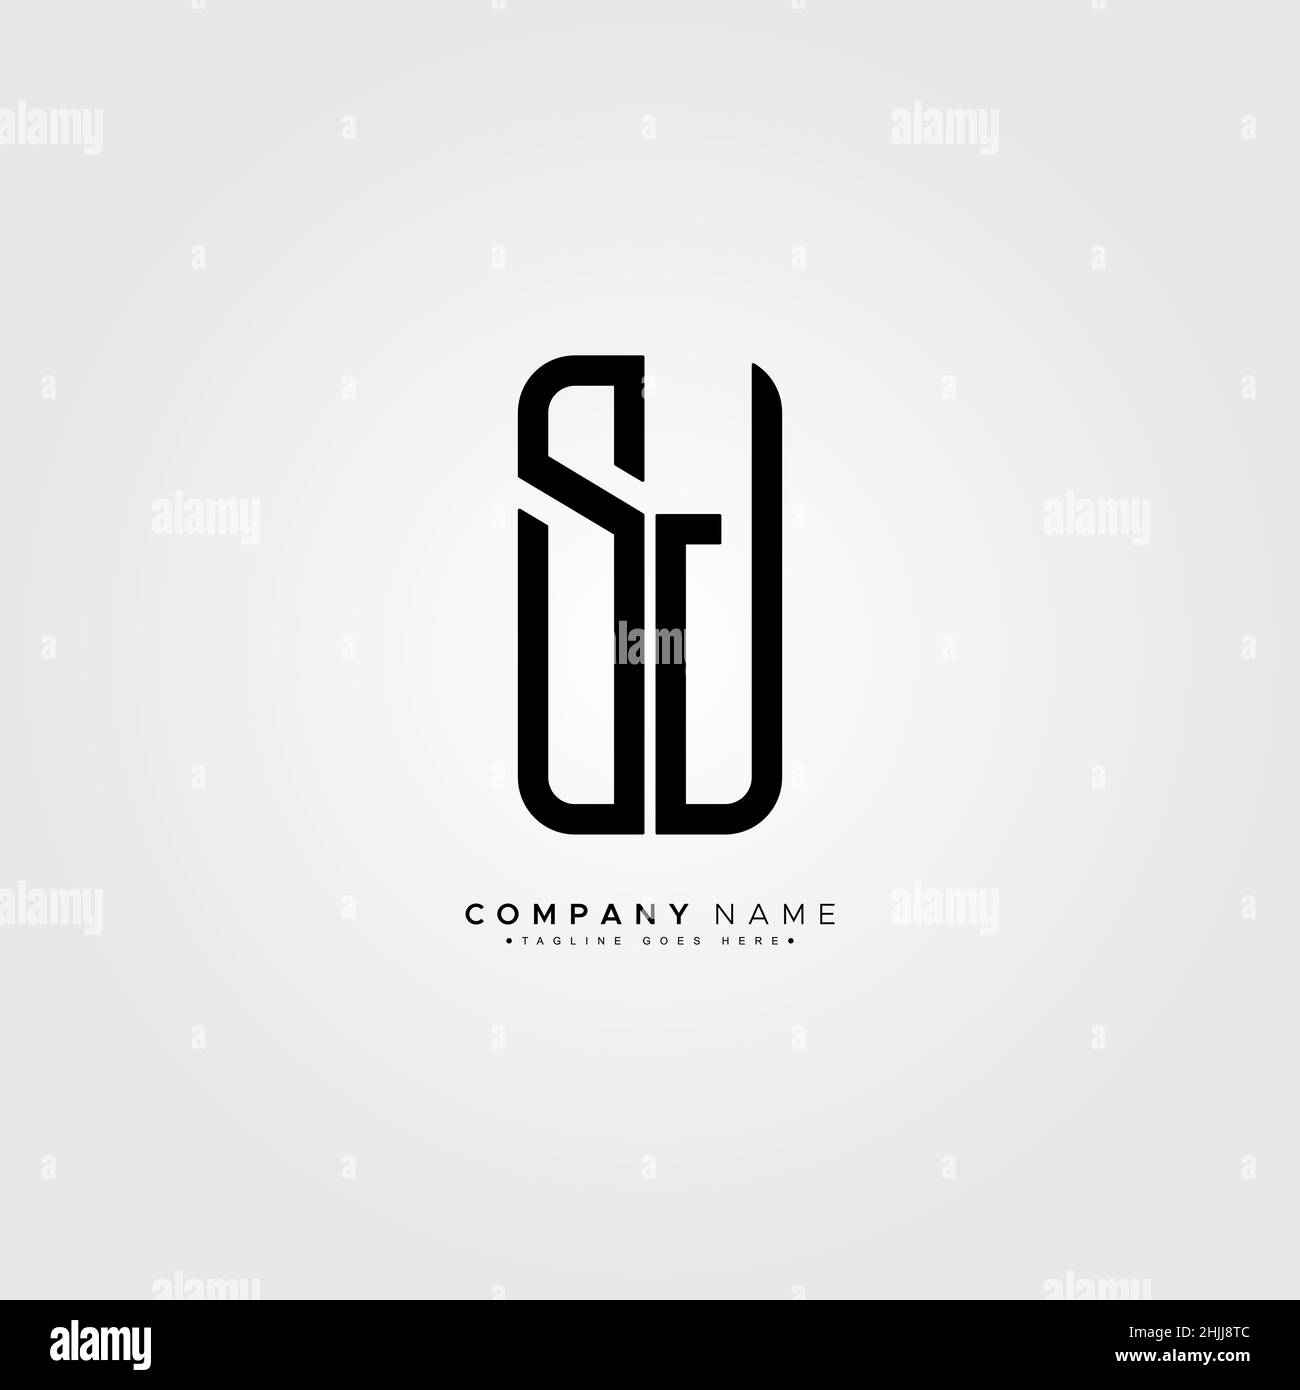 Minimal Business logo for Alphabet SJ - Initial Letter S and J Logo Stock Vector